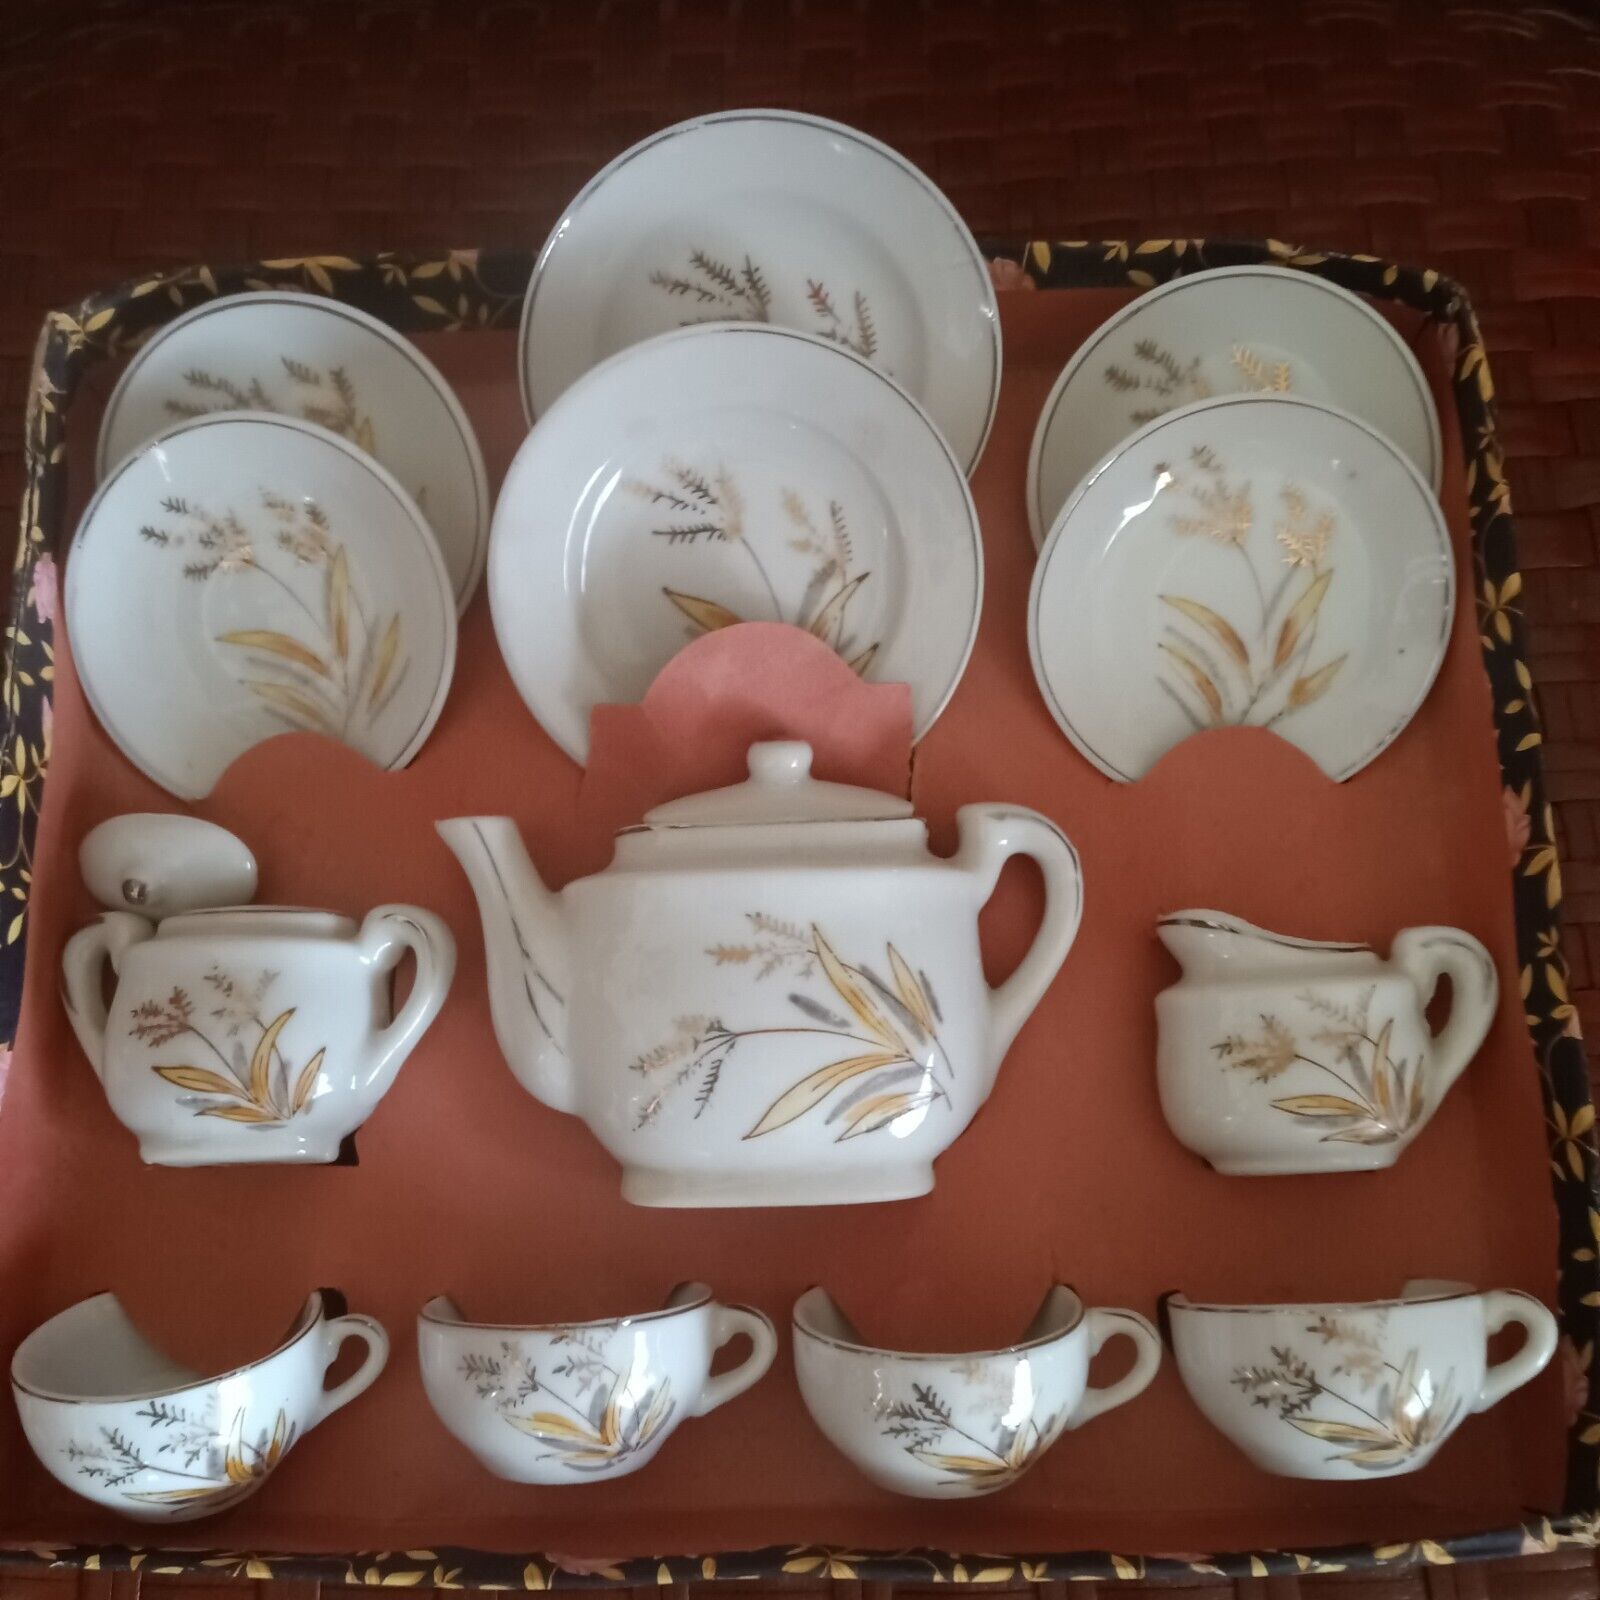 Vintage Miniature Childs Tea Set Cups Saucers Teapot Sugar Creamer Plates 13pcs